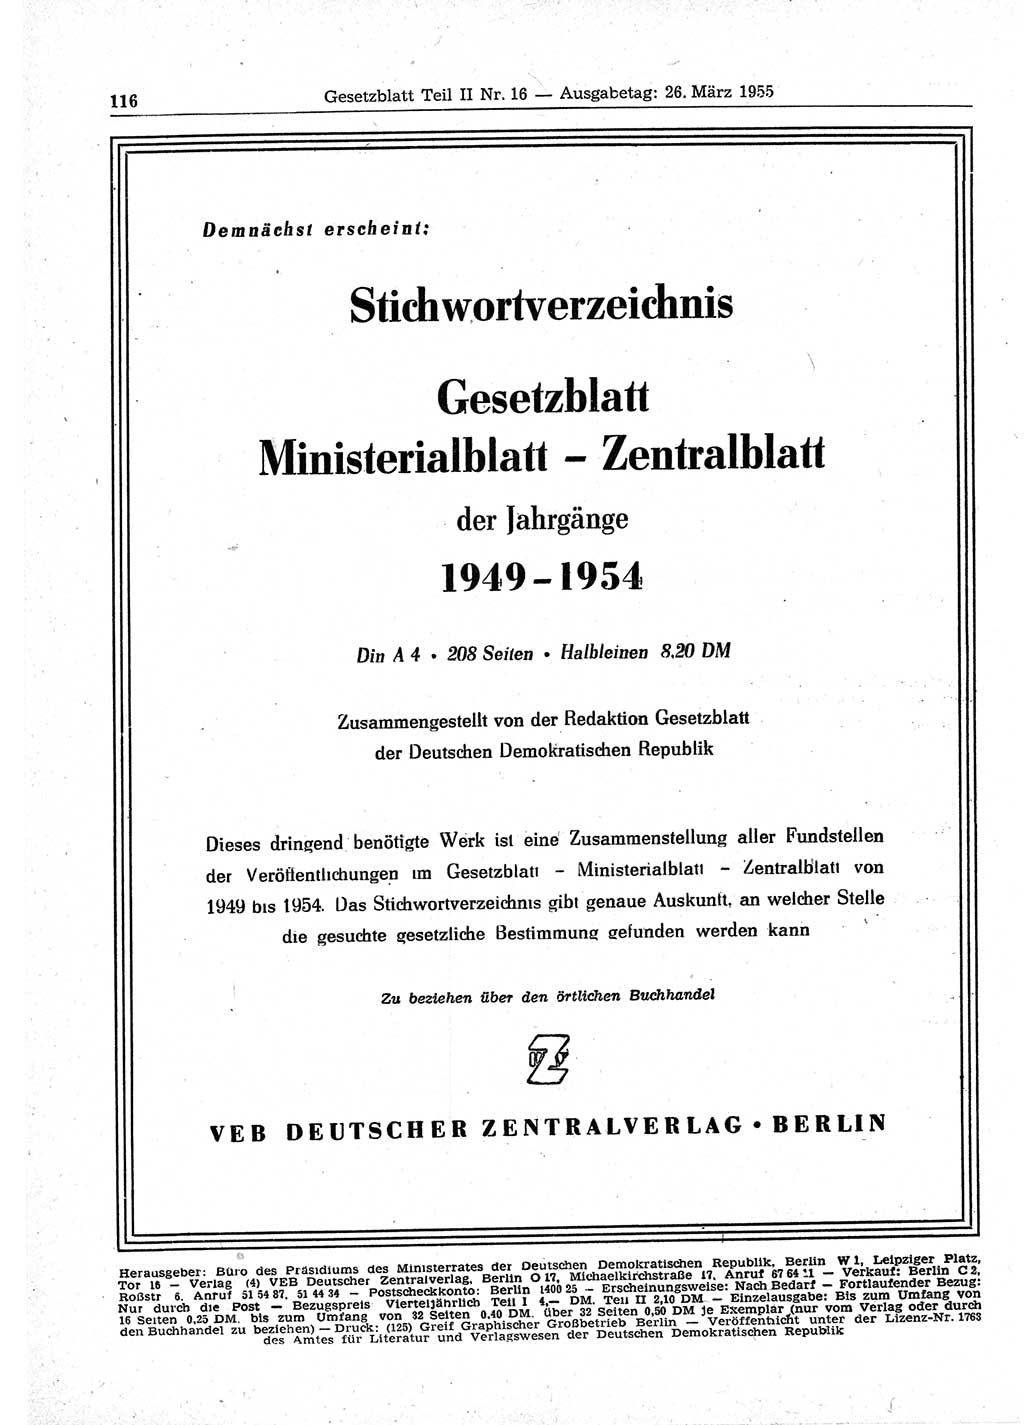 Gesetzblatt (GBl.) der Deutschen Demokratischen Republik (DDR) Teil ⅠⅠ 1955, Seite 116 (GBl. DDR ⅠⅠ 1955, S. 116)